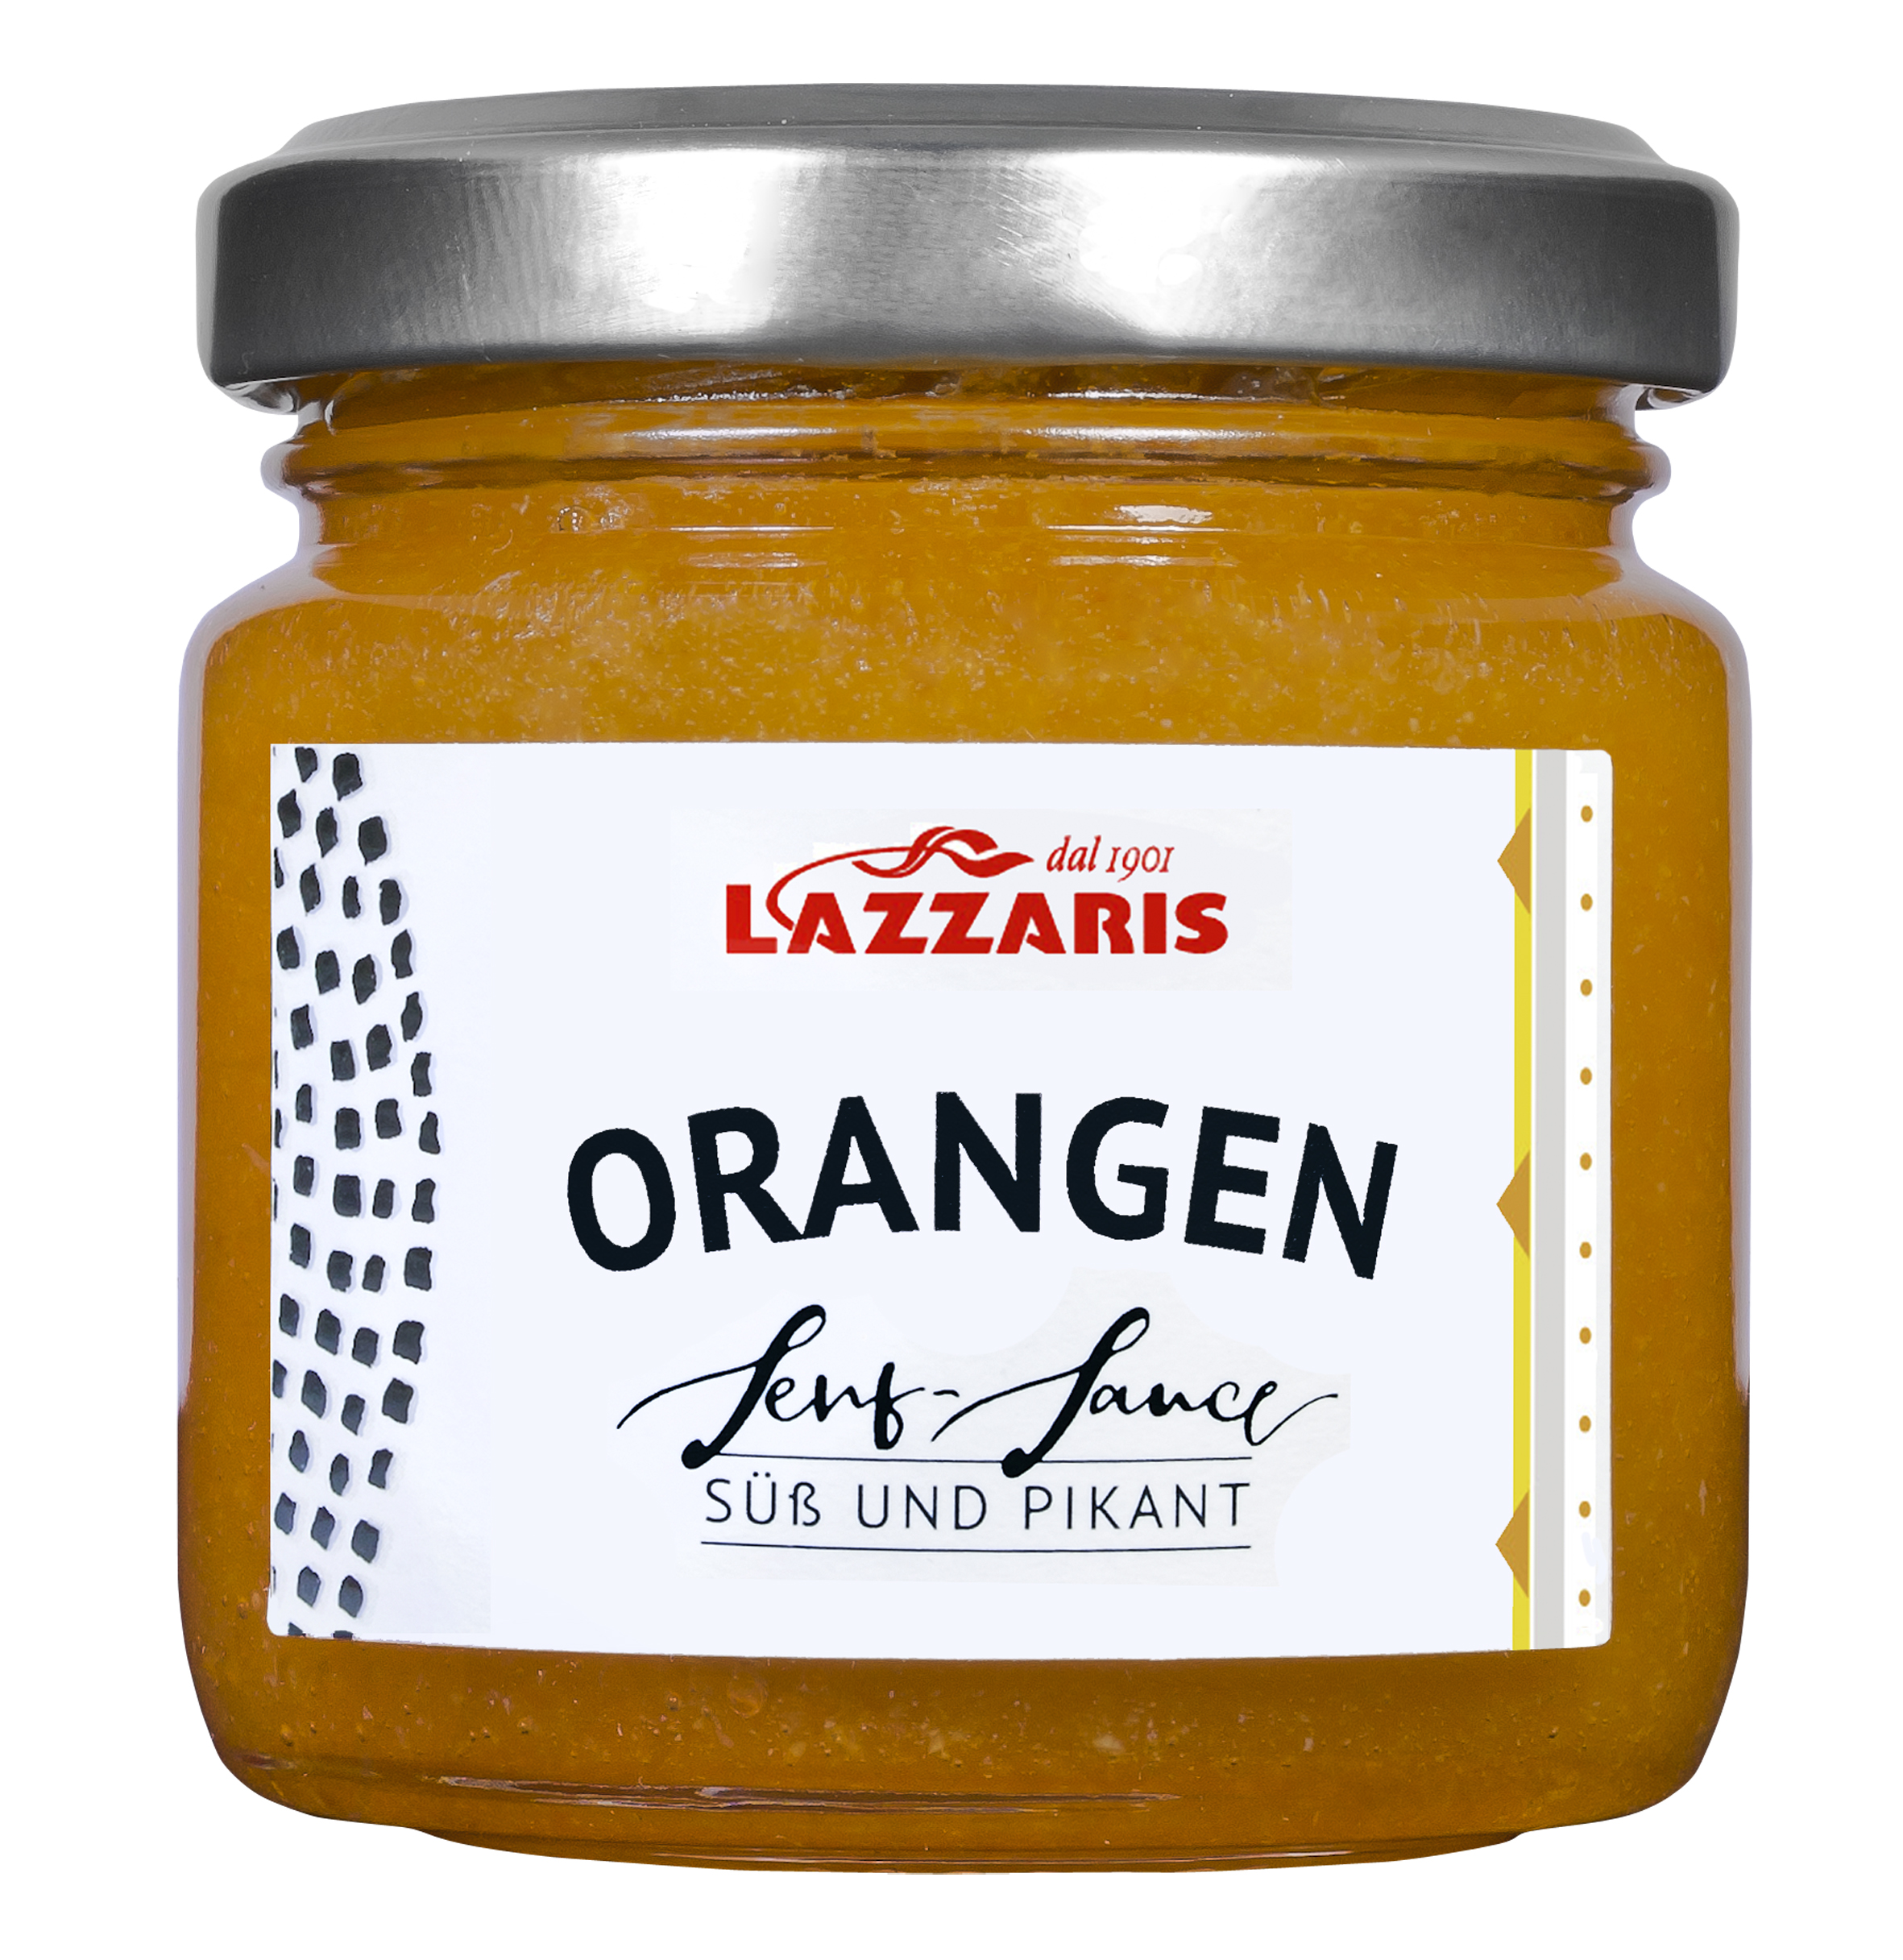 Orangen-Senf-Sauce, 120 g